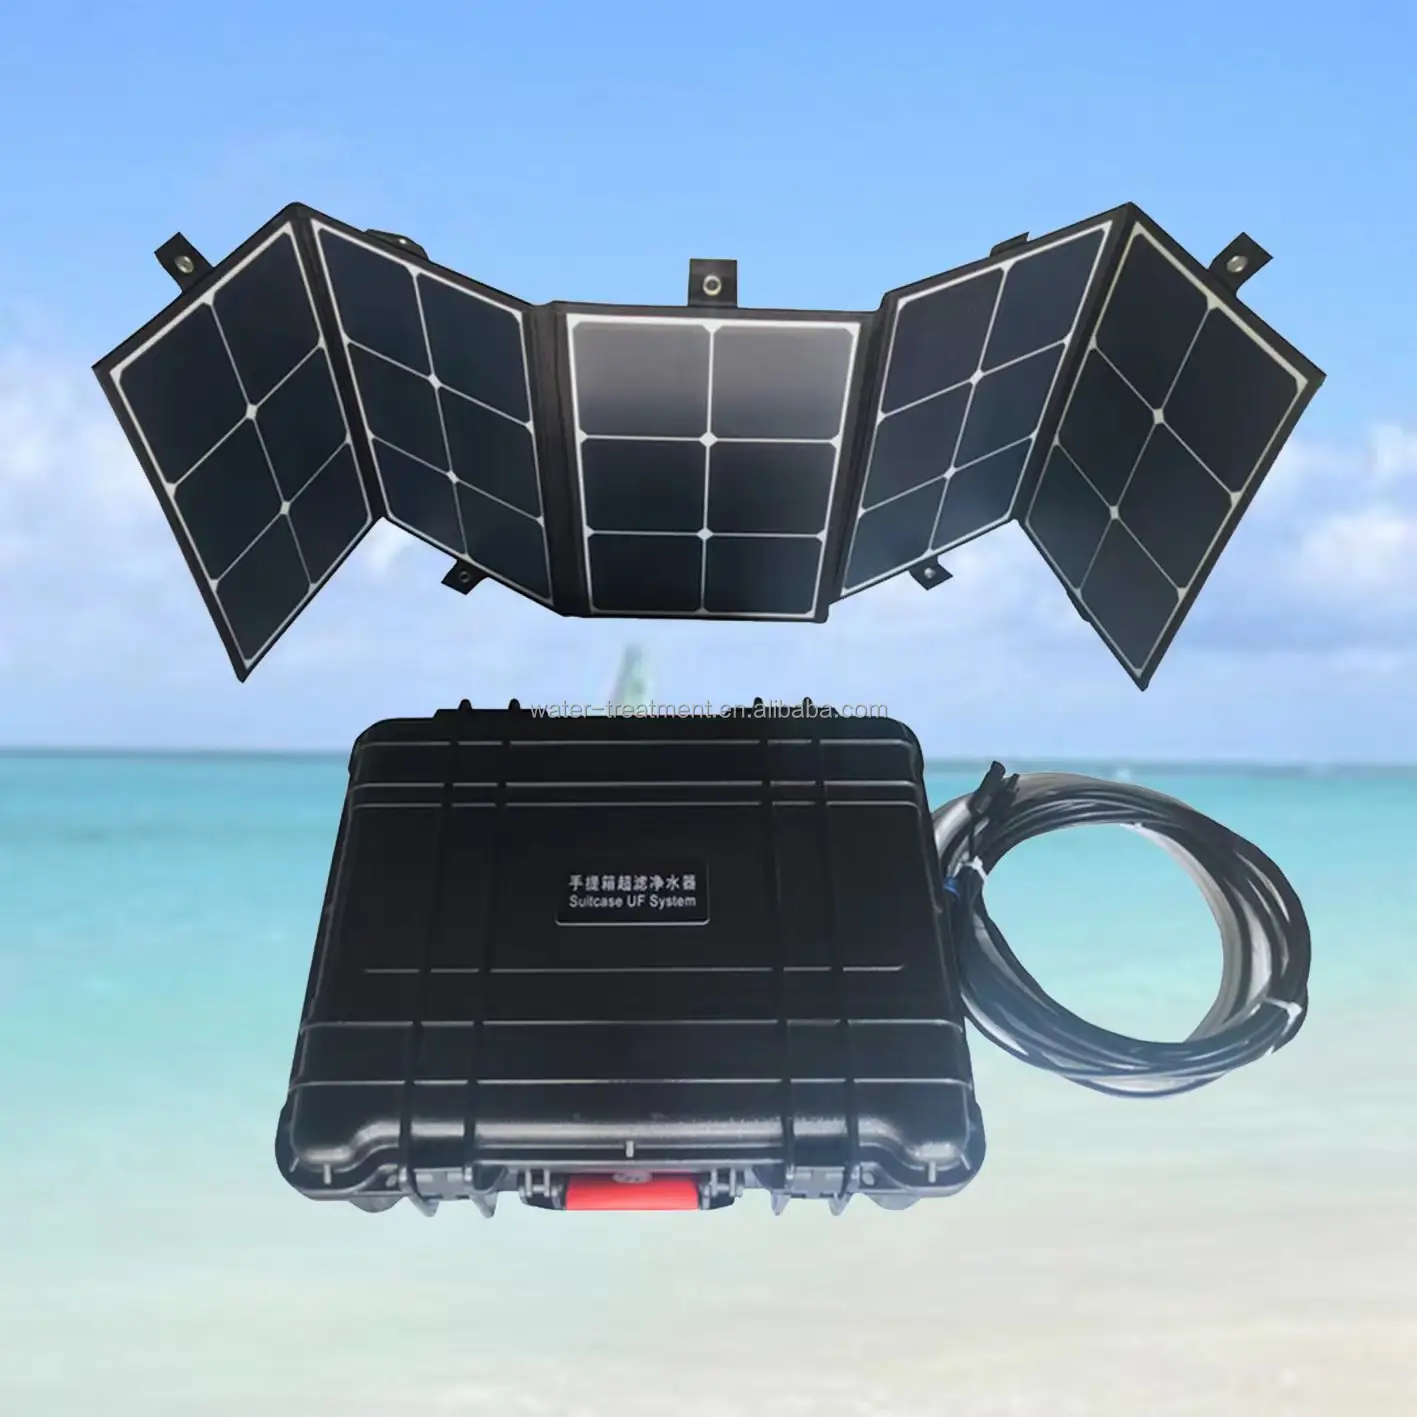 Tragbarer Koffer Solar entsalzung system Salzwasser zur Trinkwasser maschine Preis für Not wasser bereiter im Freien